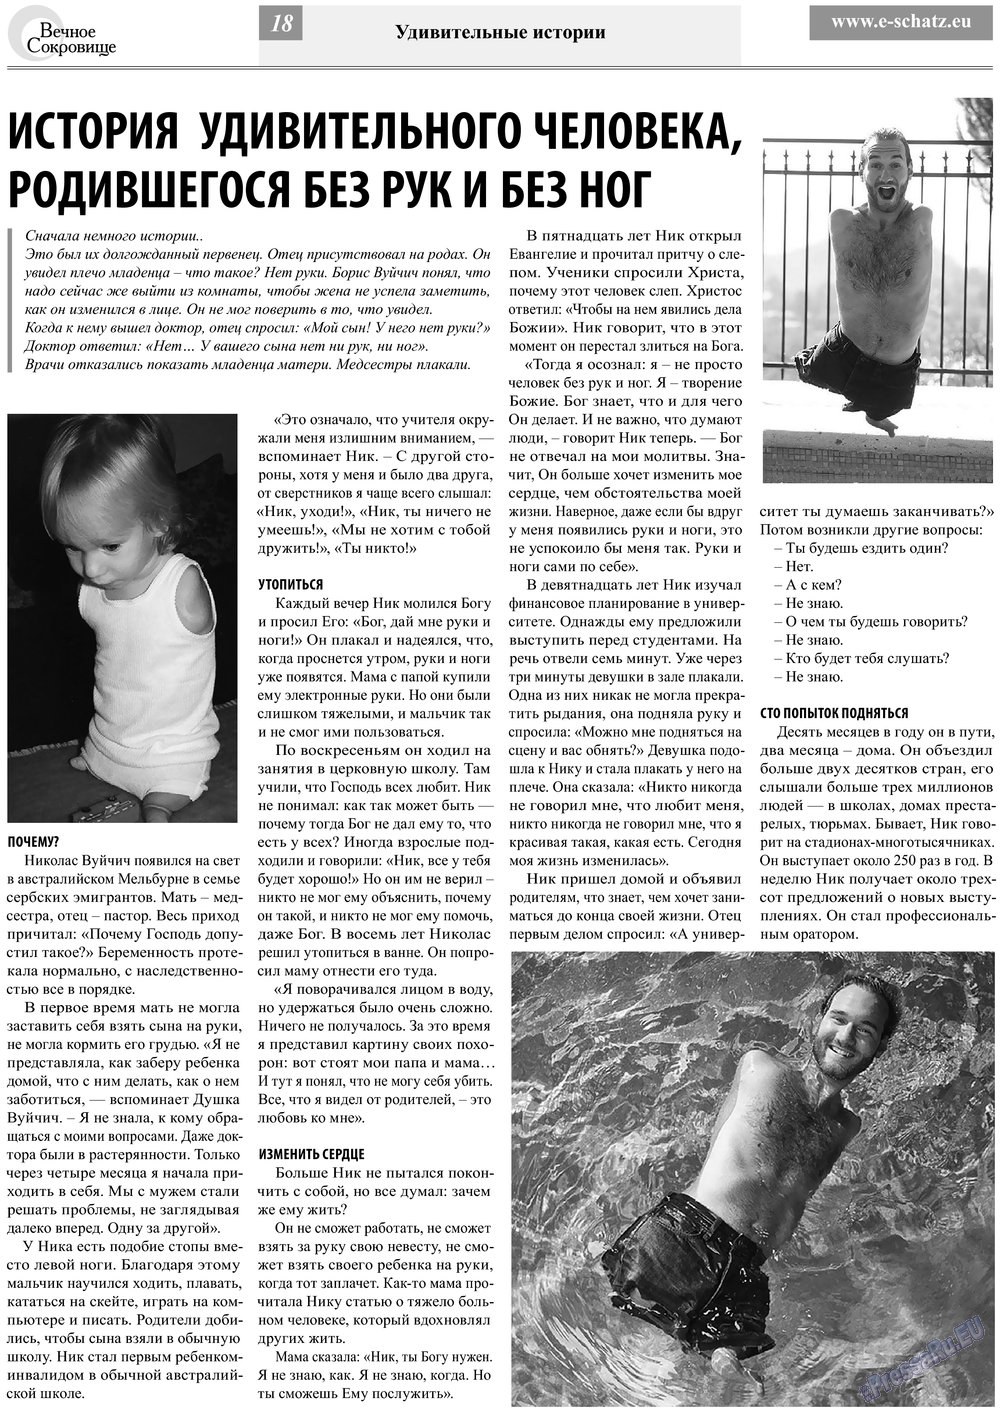 Вечное сокровище, газета. 2013 №2 стр.18